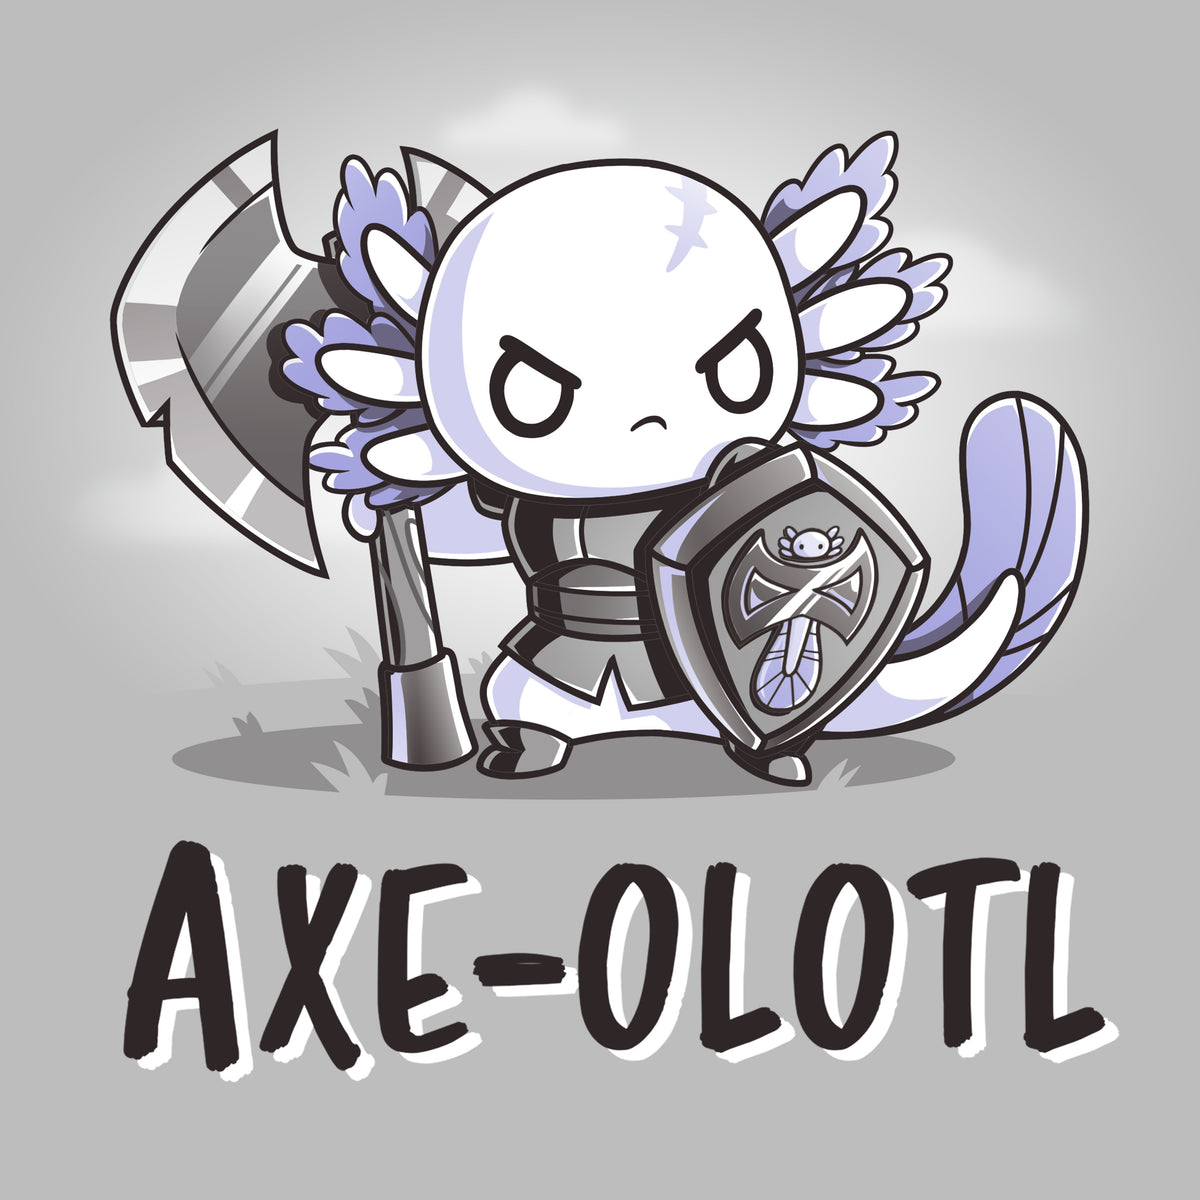 Axe-olotl Warrior | Funny, cute, & nerdy t-shirts